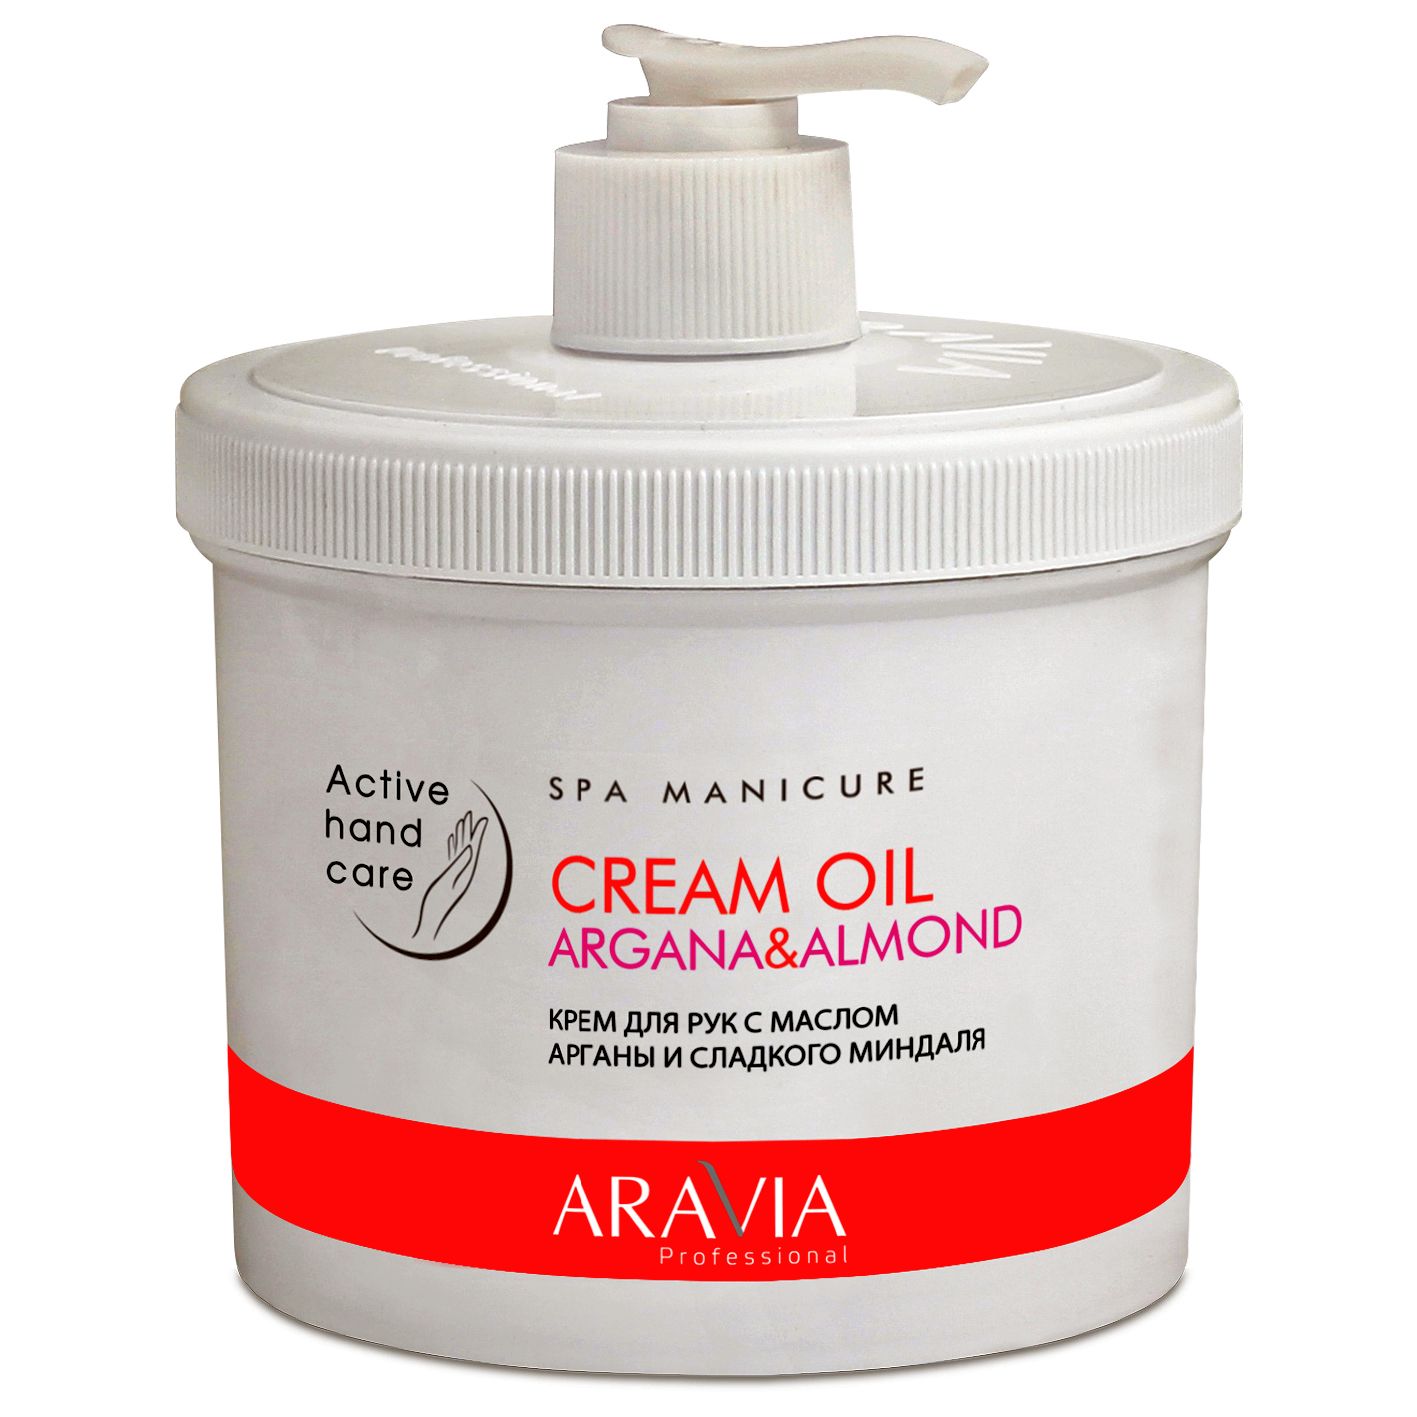 Aravia крем для рук с маслом арганы и сладкого миндаля cream oil 550мл (р)